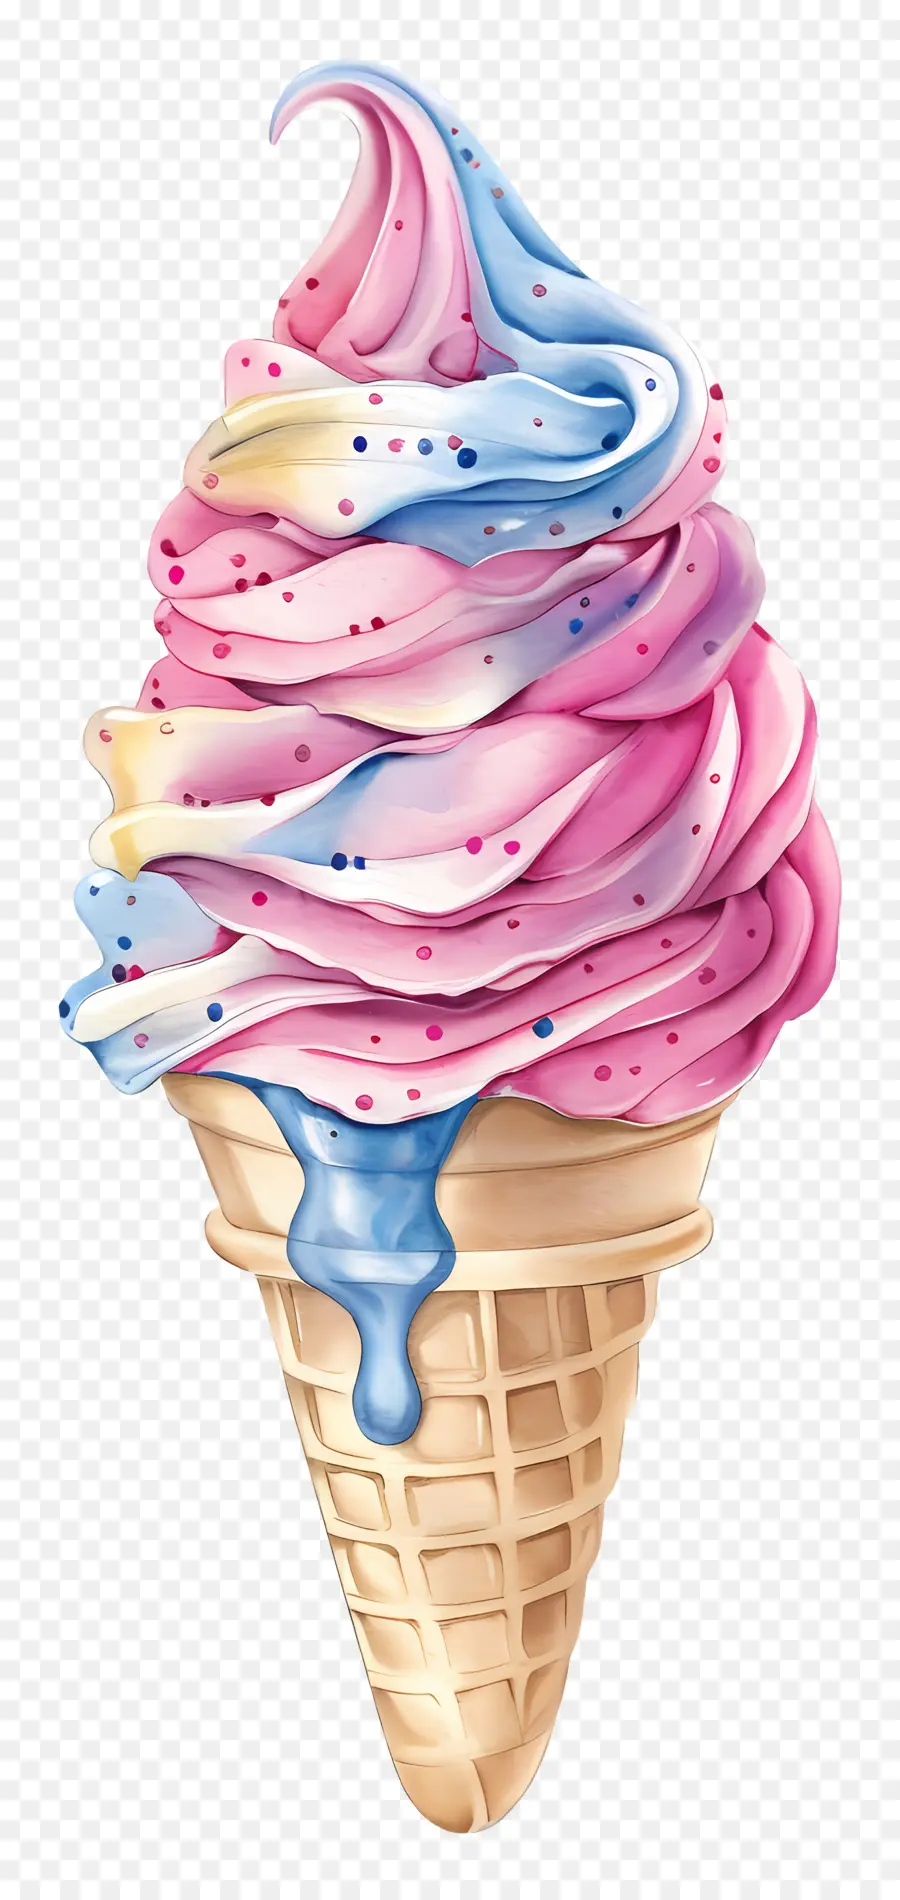 Softy Ice Cream WaterColor Illustration Cone gelato a cono di cioccolato rosa e blu - Illustrazione colorata di cono di gelato dipinto a mano